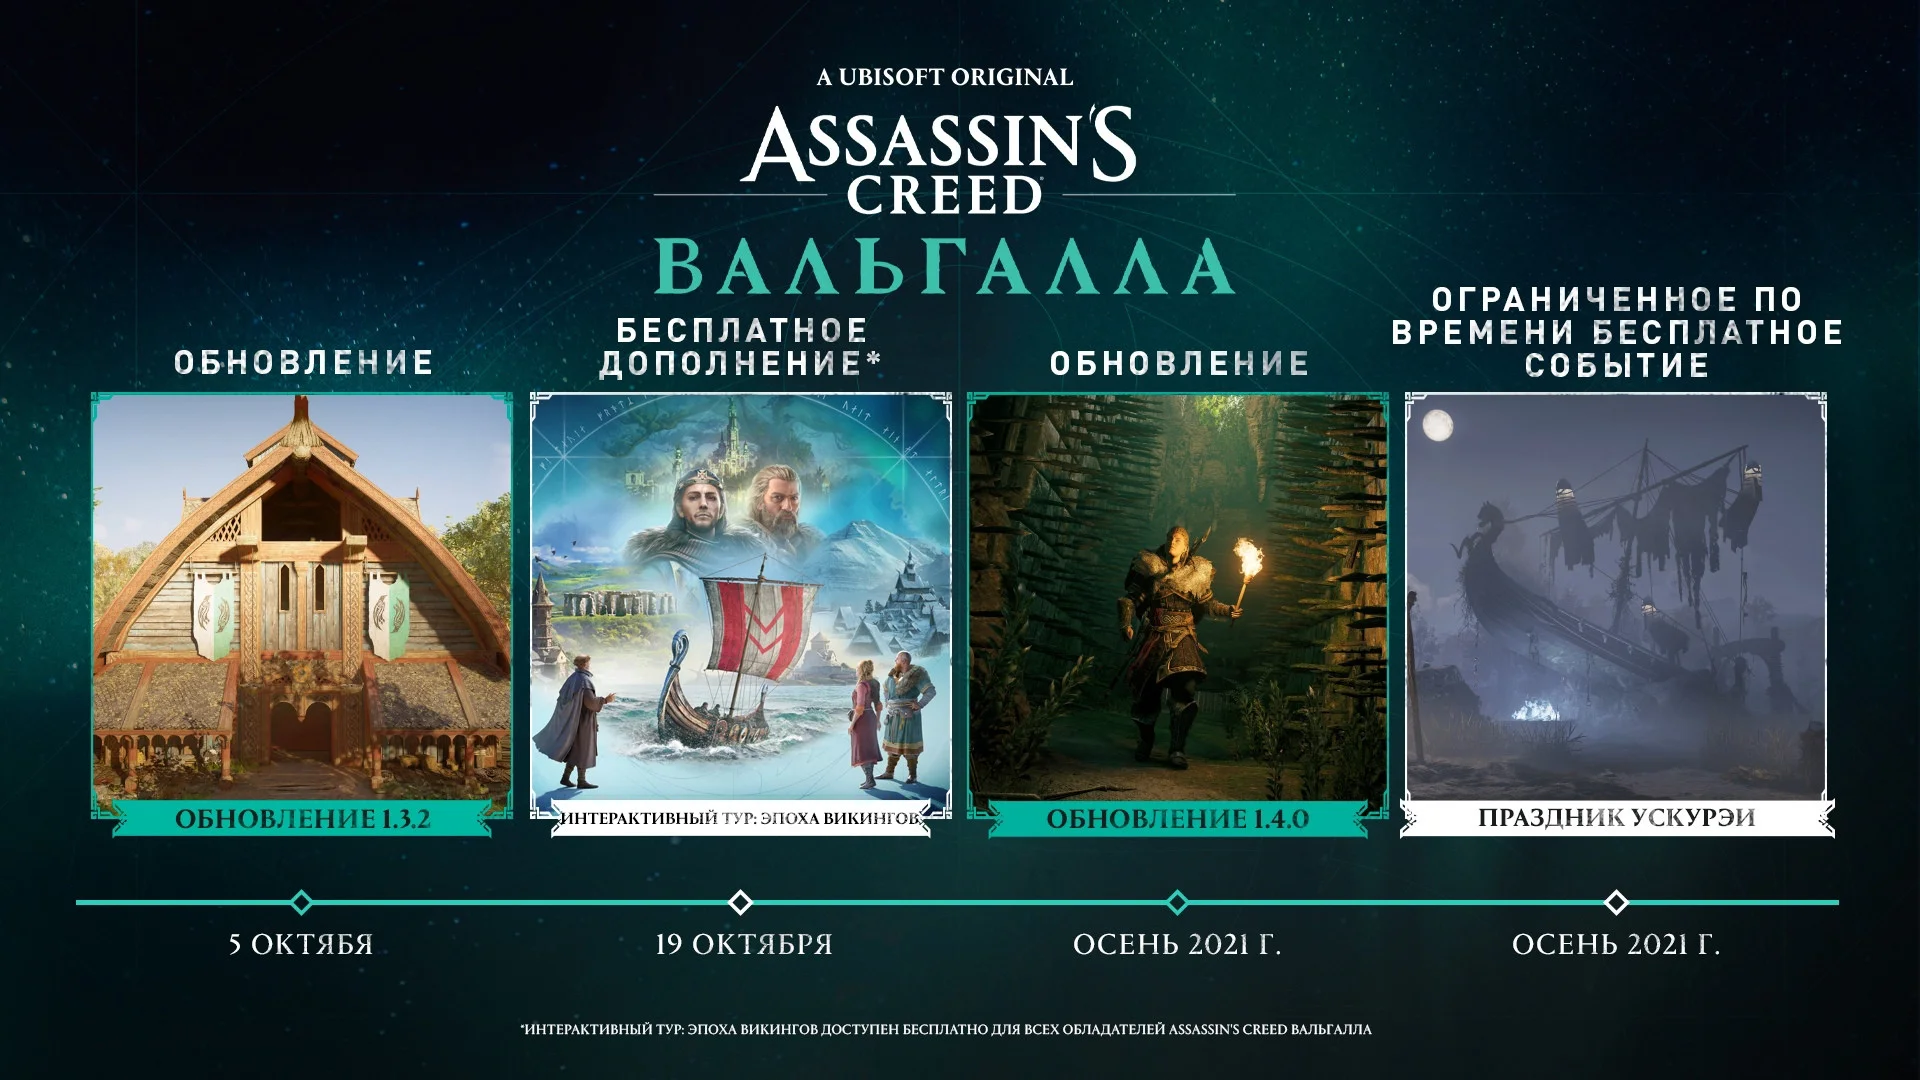 Авторы Assassin’s Creed Valhalla рассказали про обновления осени - фото 1